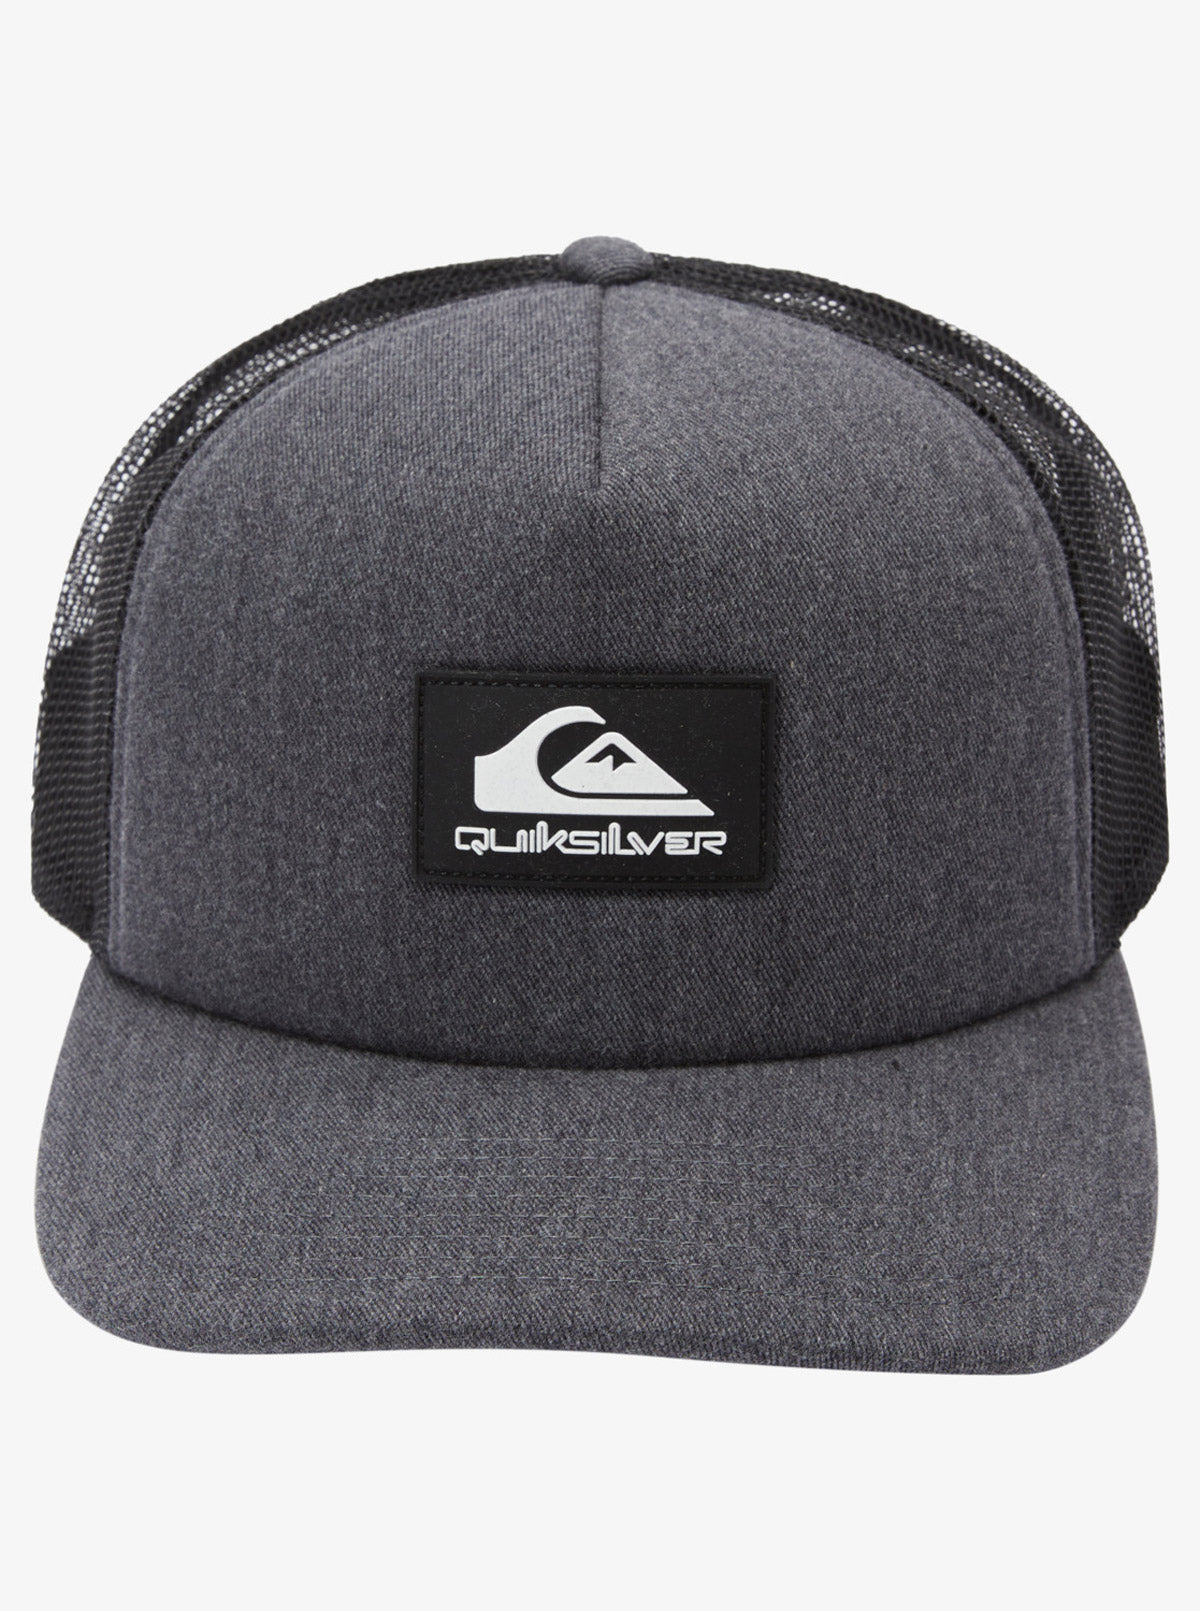 Quiksliver: Omnipotent Trucker Hat